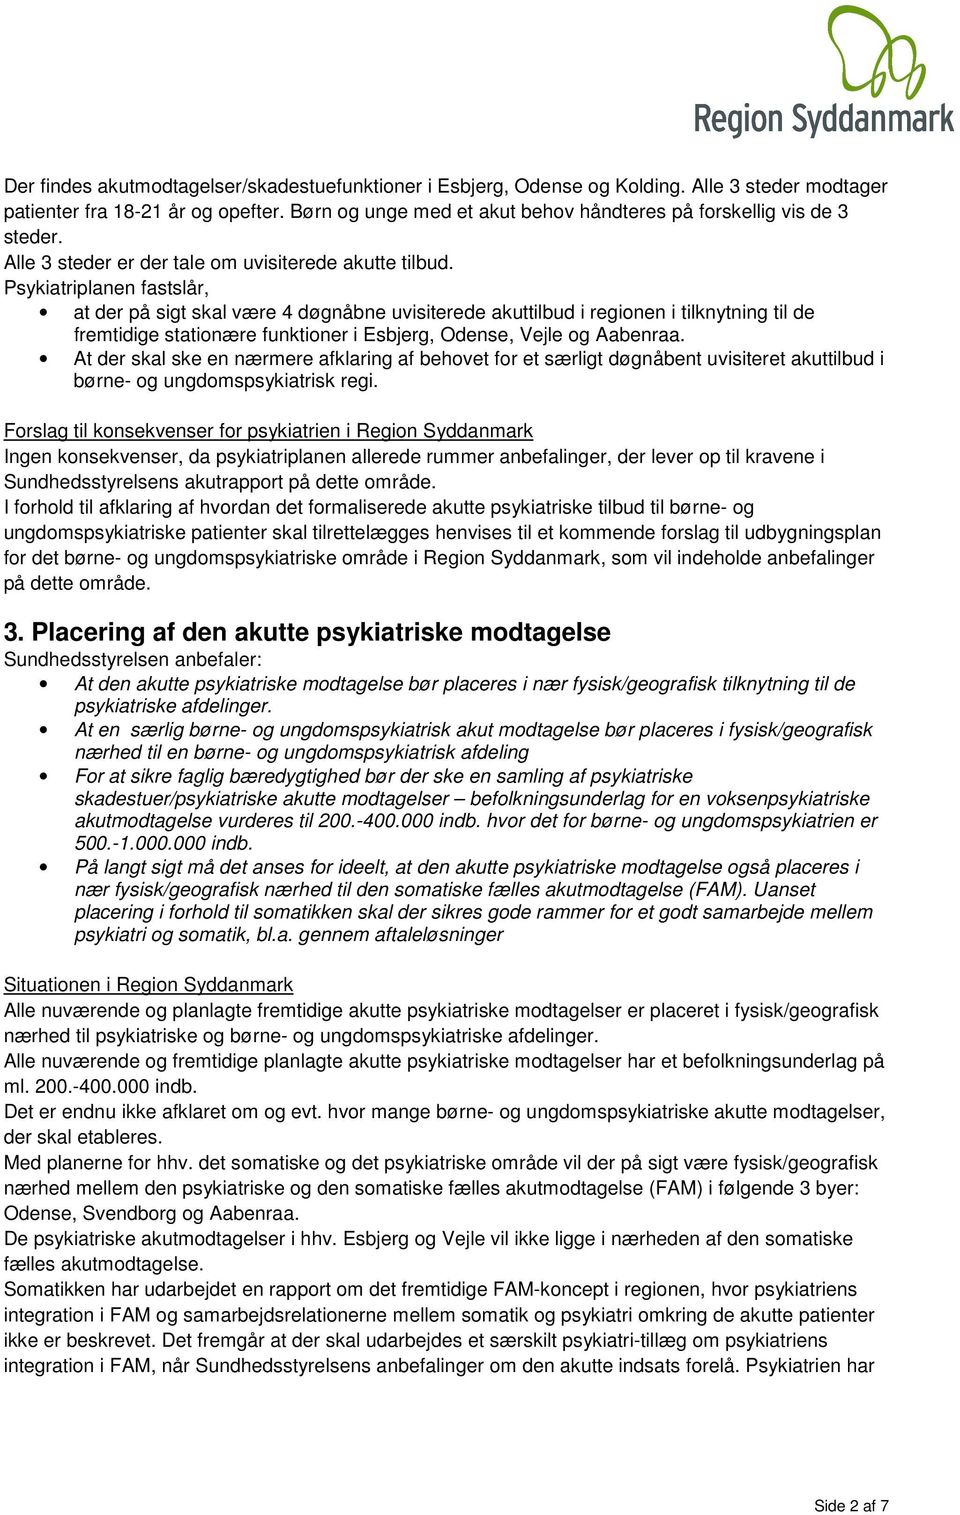 Psykiatriplanen fastslår, at der på sigt skal være 4 døgnåbne uvisiterede akuttilbud i reginen i tilknytning til de fremtidige statinære funktiner i Esbjerg, Odense, Vejle g Aabenraa.